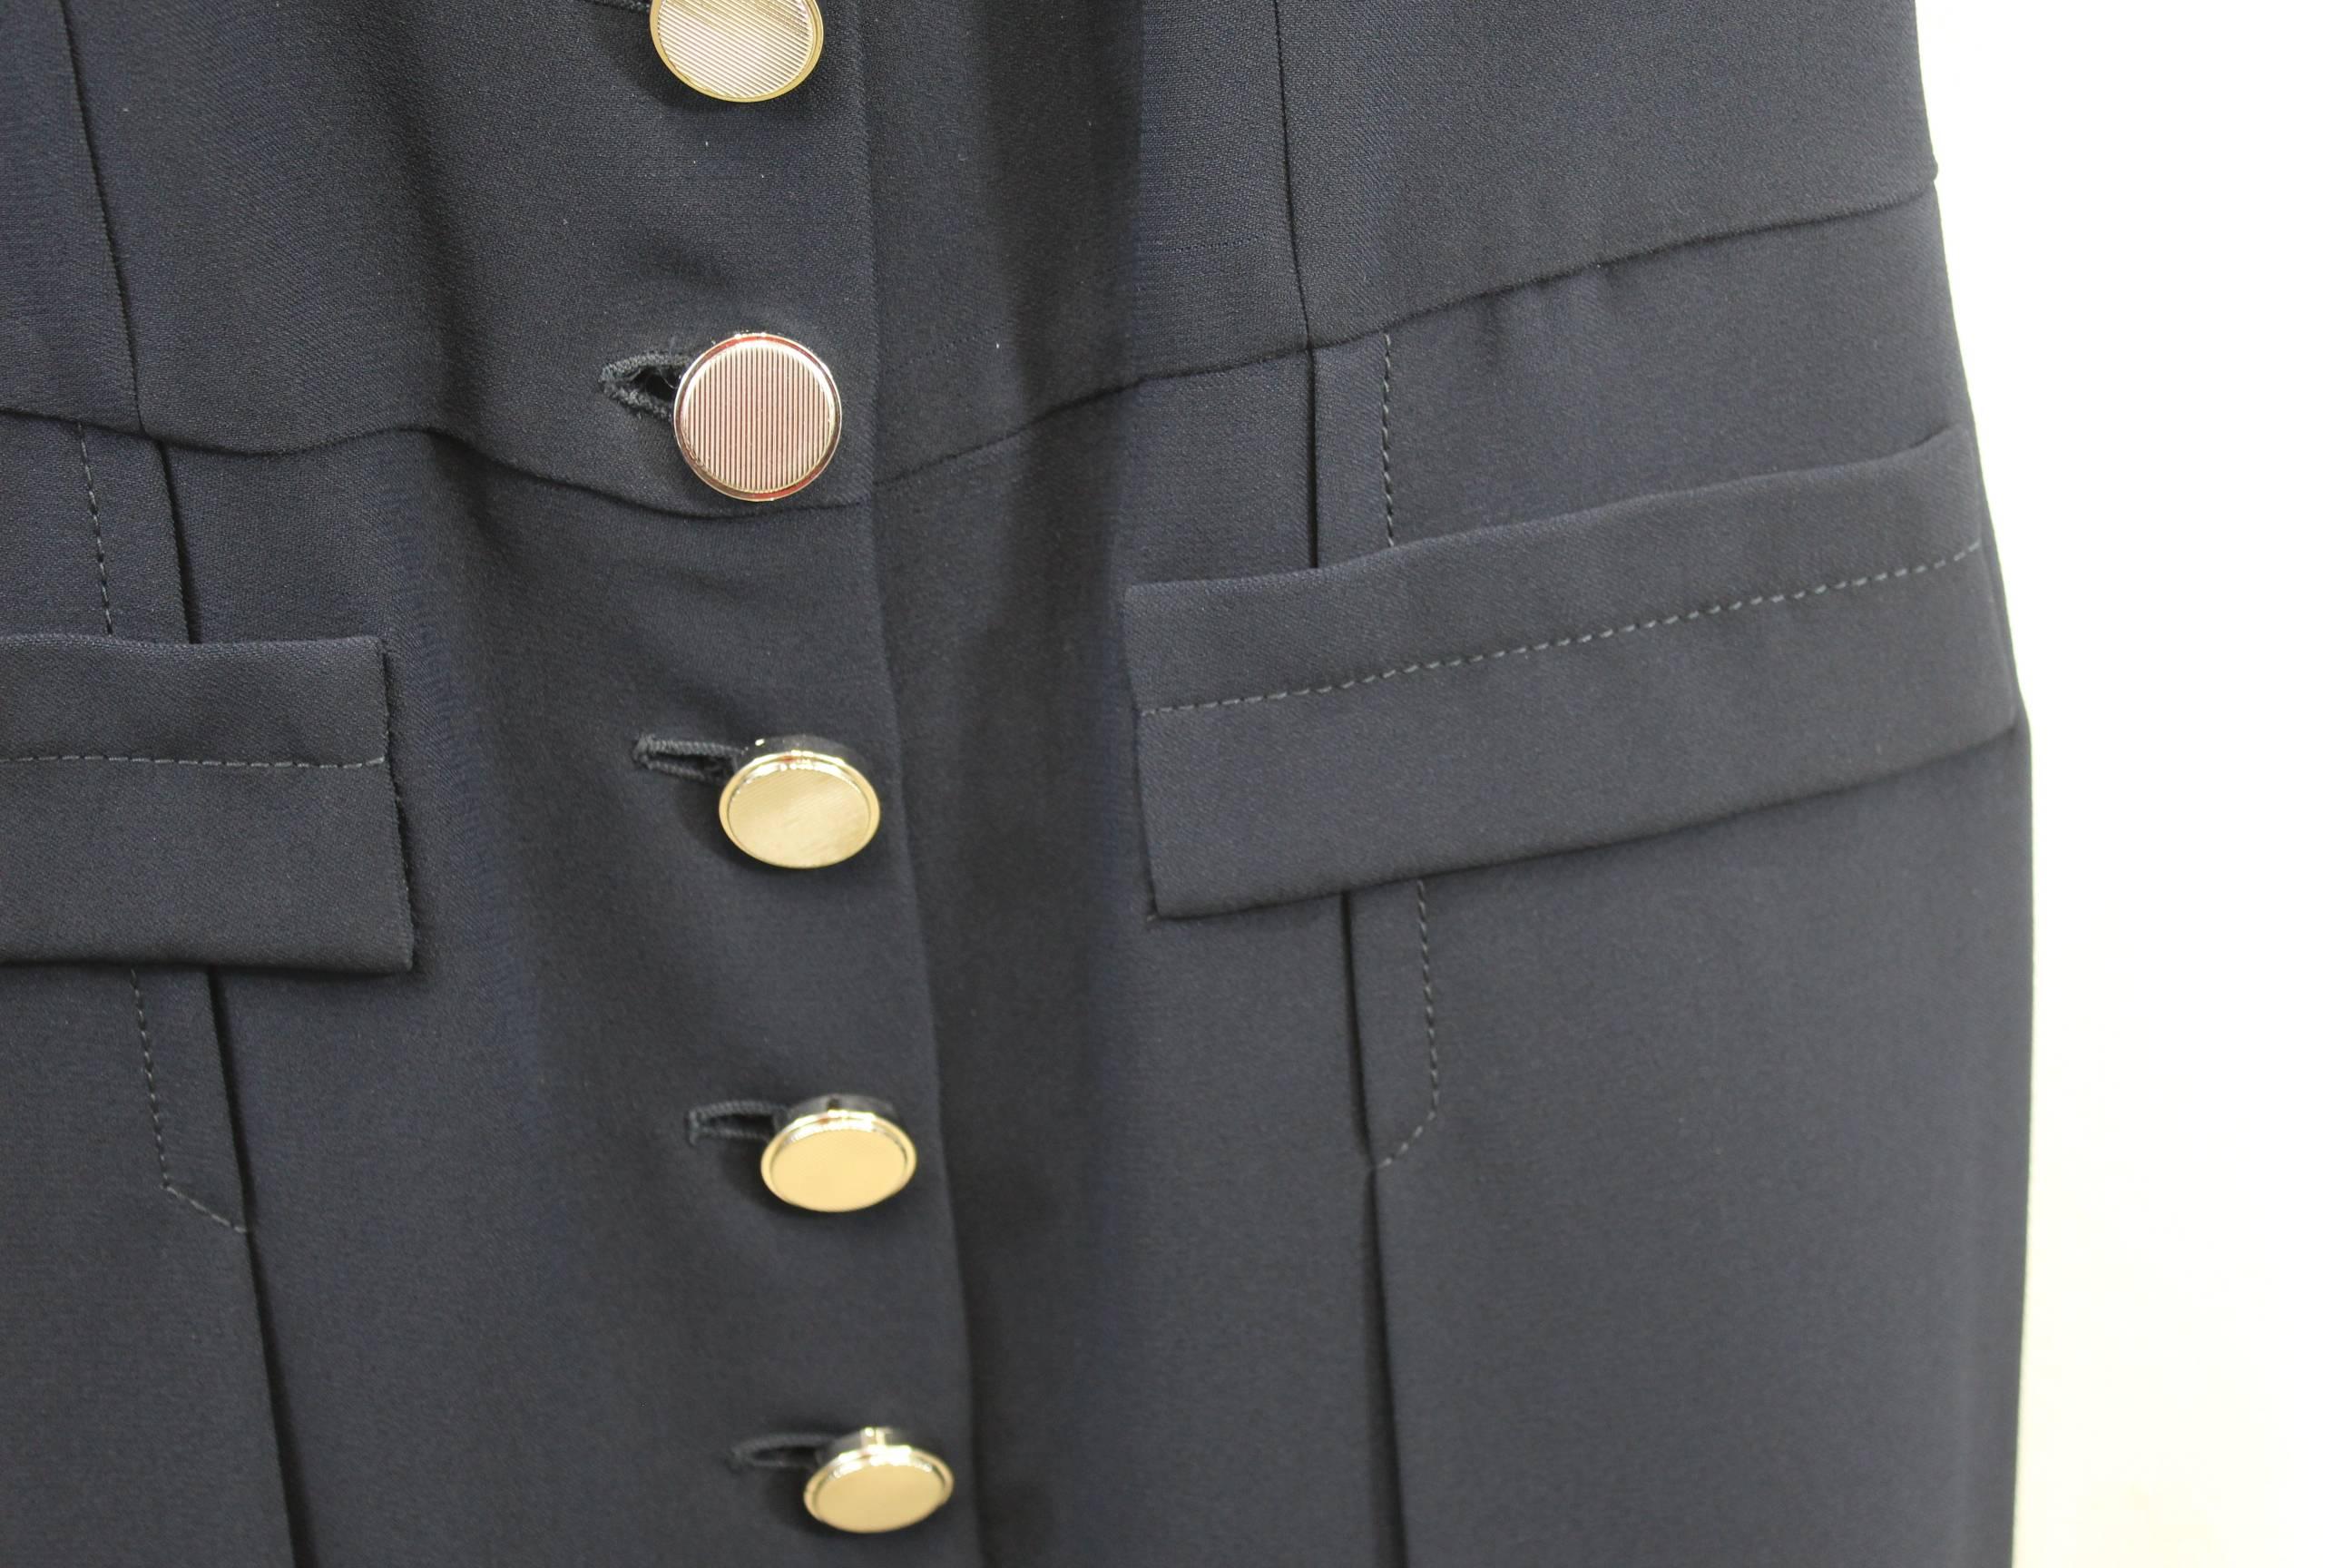 Miu Miu Navy Day Dress in excellent condition. Retail Price 1300$. S 36 In Excellent Condition For Sale In Paris, FR